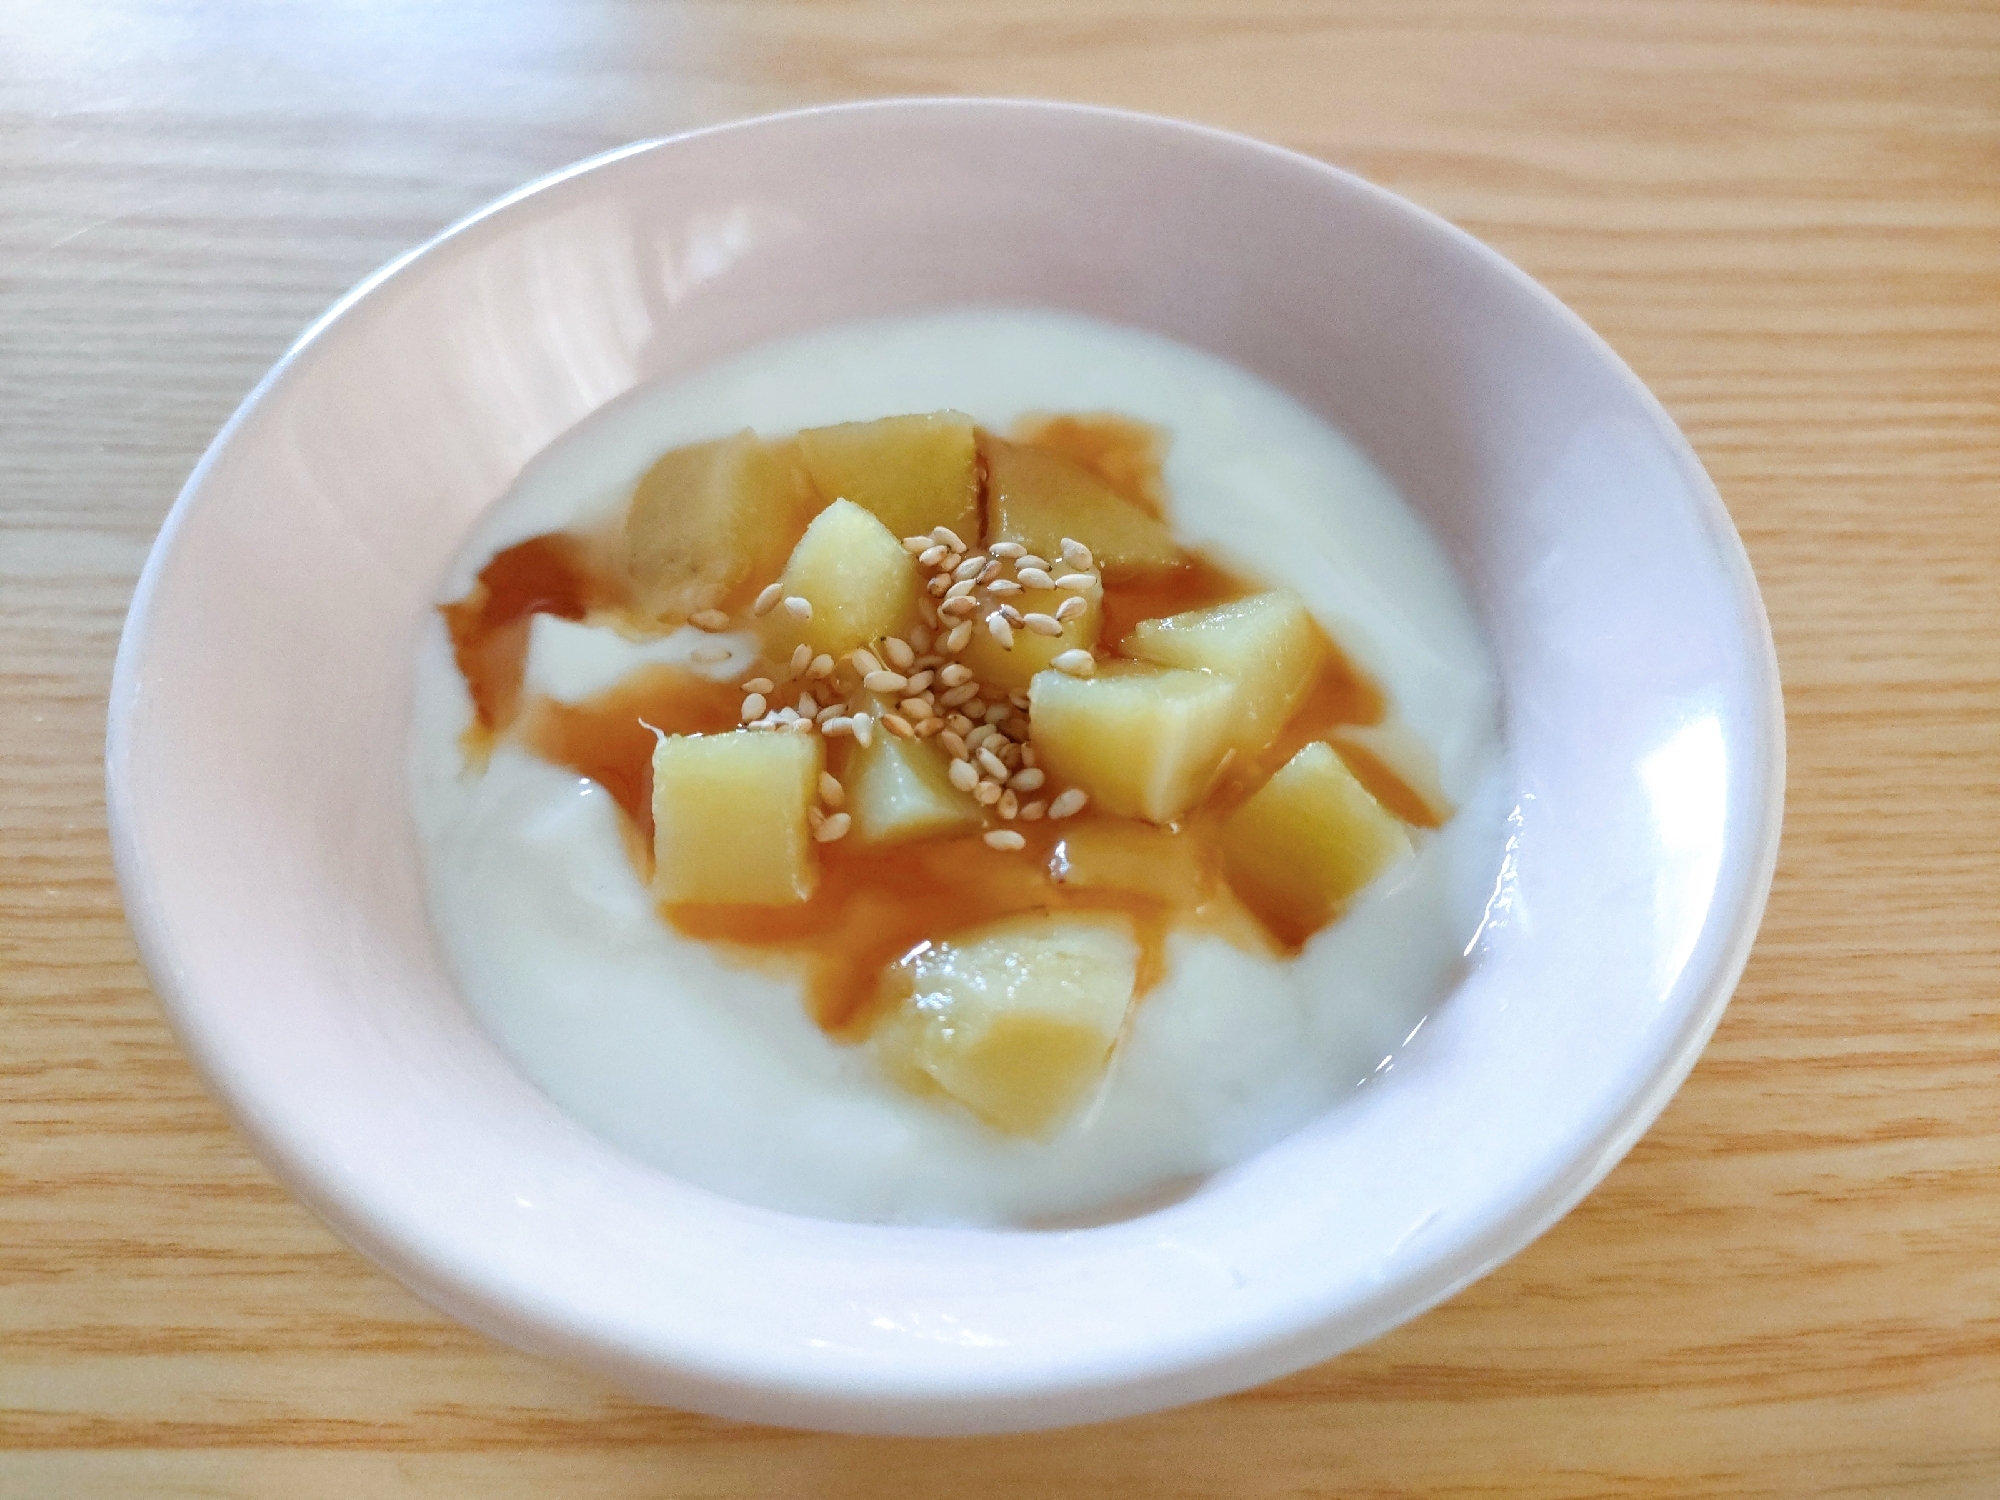 焼き芋リメイク☆さつま芋と黒蜜のヨーグルトデザート